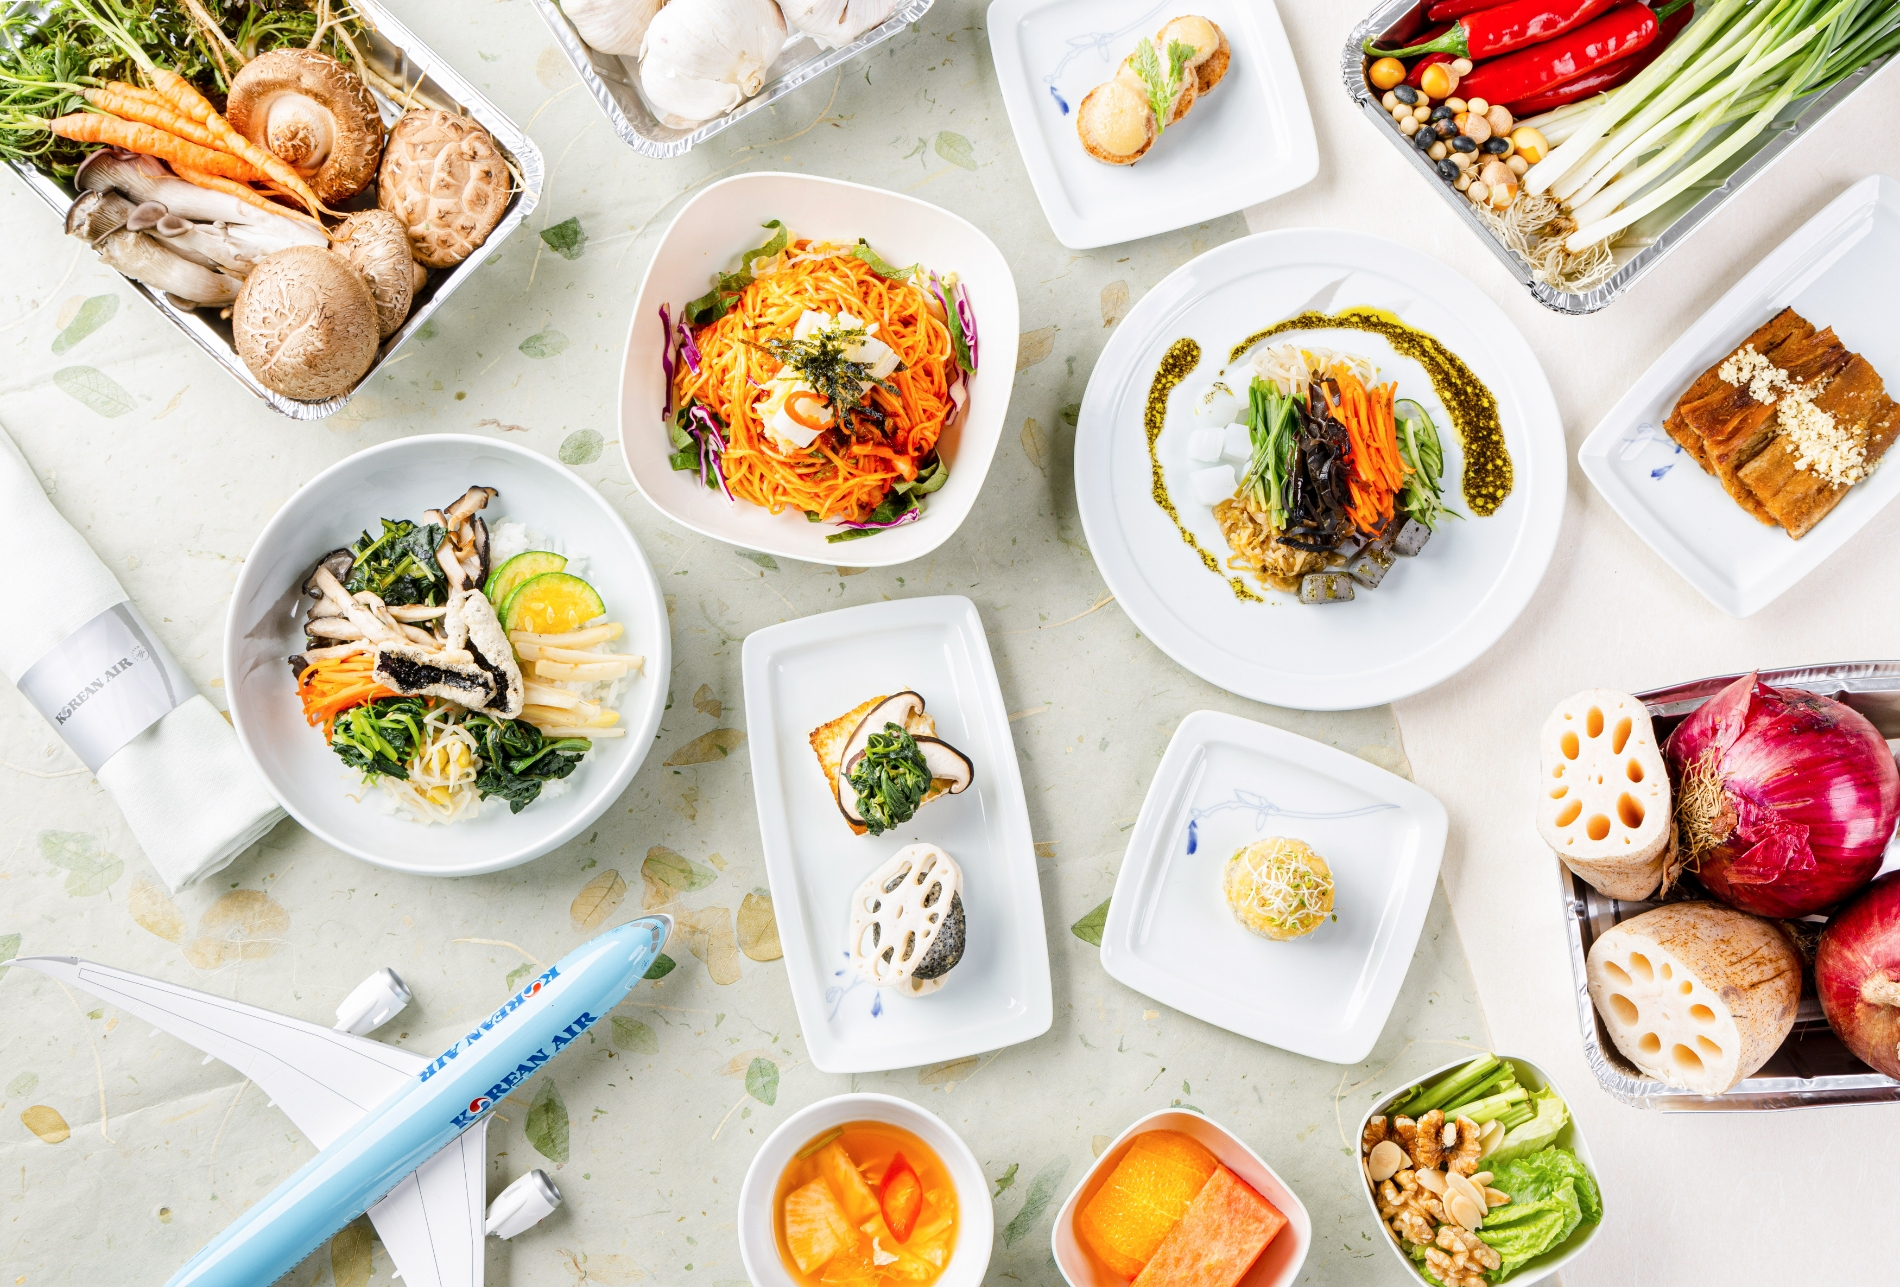 대한항공이 전통 한식을 바탕으로 새로운 채식 메뉴를 개발해 기내에서 즐길 수 있는 ‘한국식 비건 메뉴’를 선보인다.(사진=대한항공)